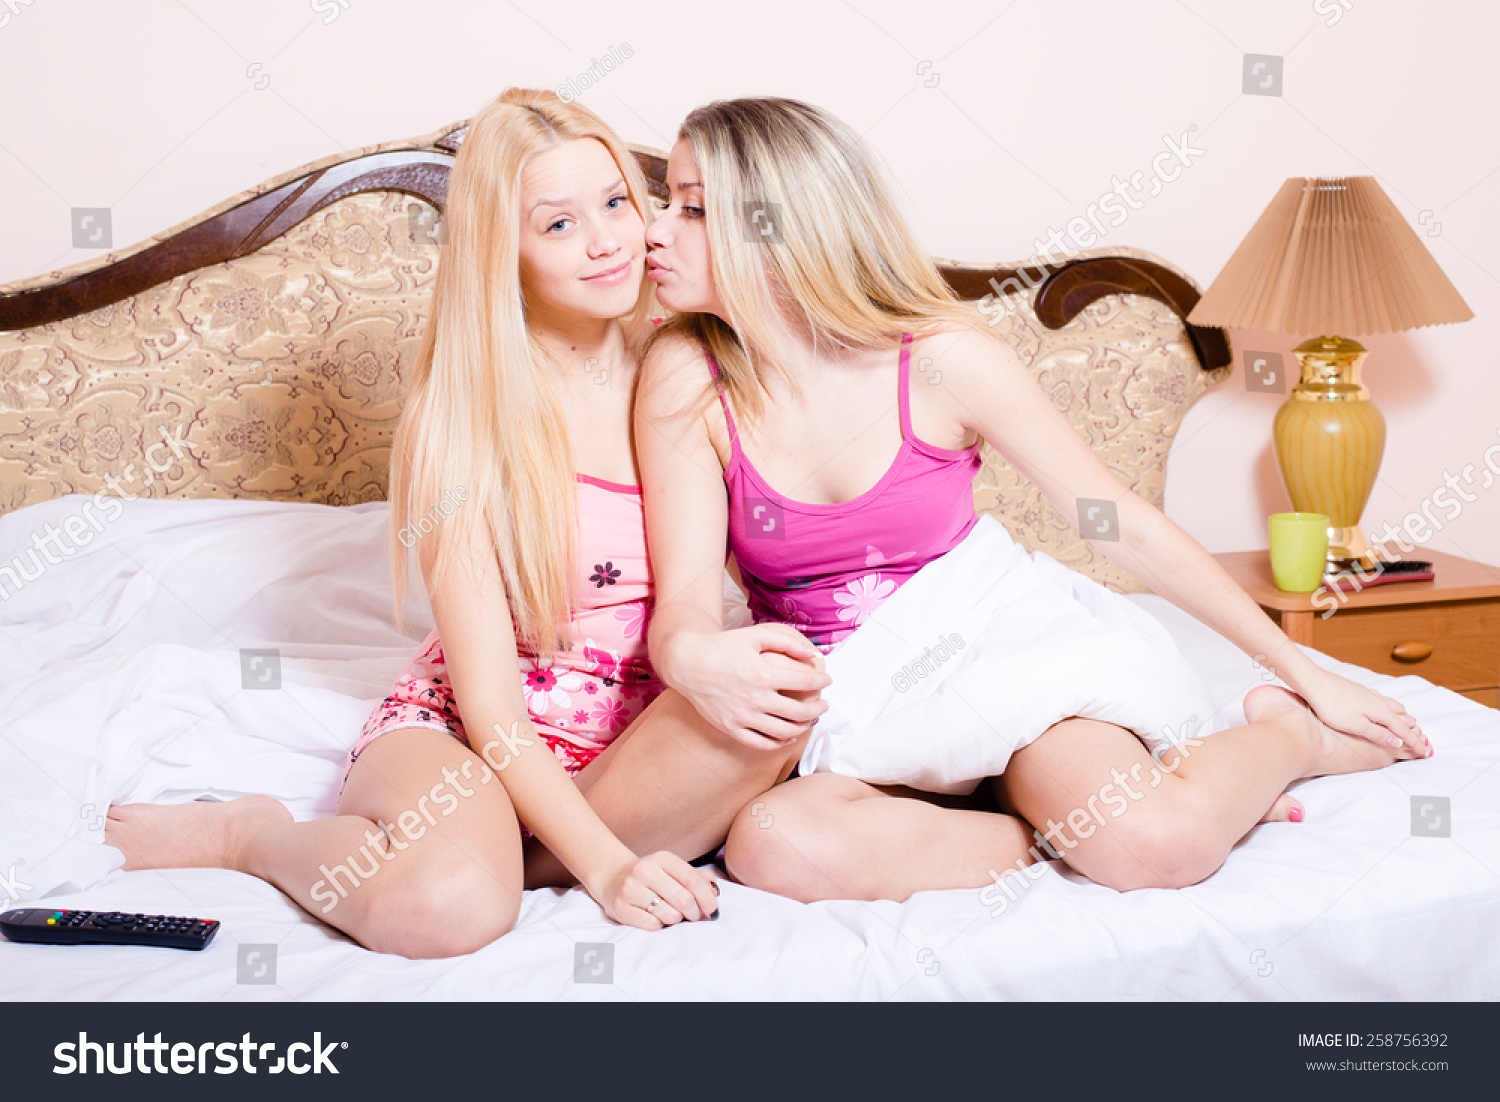 Полизал маме друга. Две блондинки в постели. Юные подруги. Две сестрички в постели. Две сестренки на кровати.